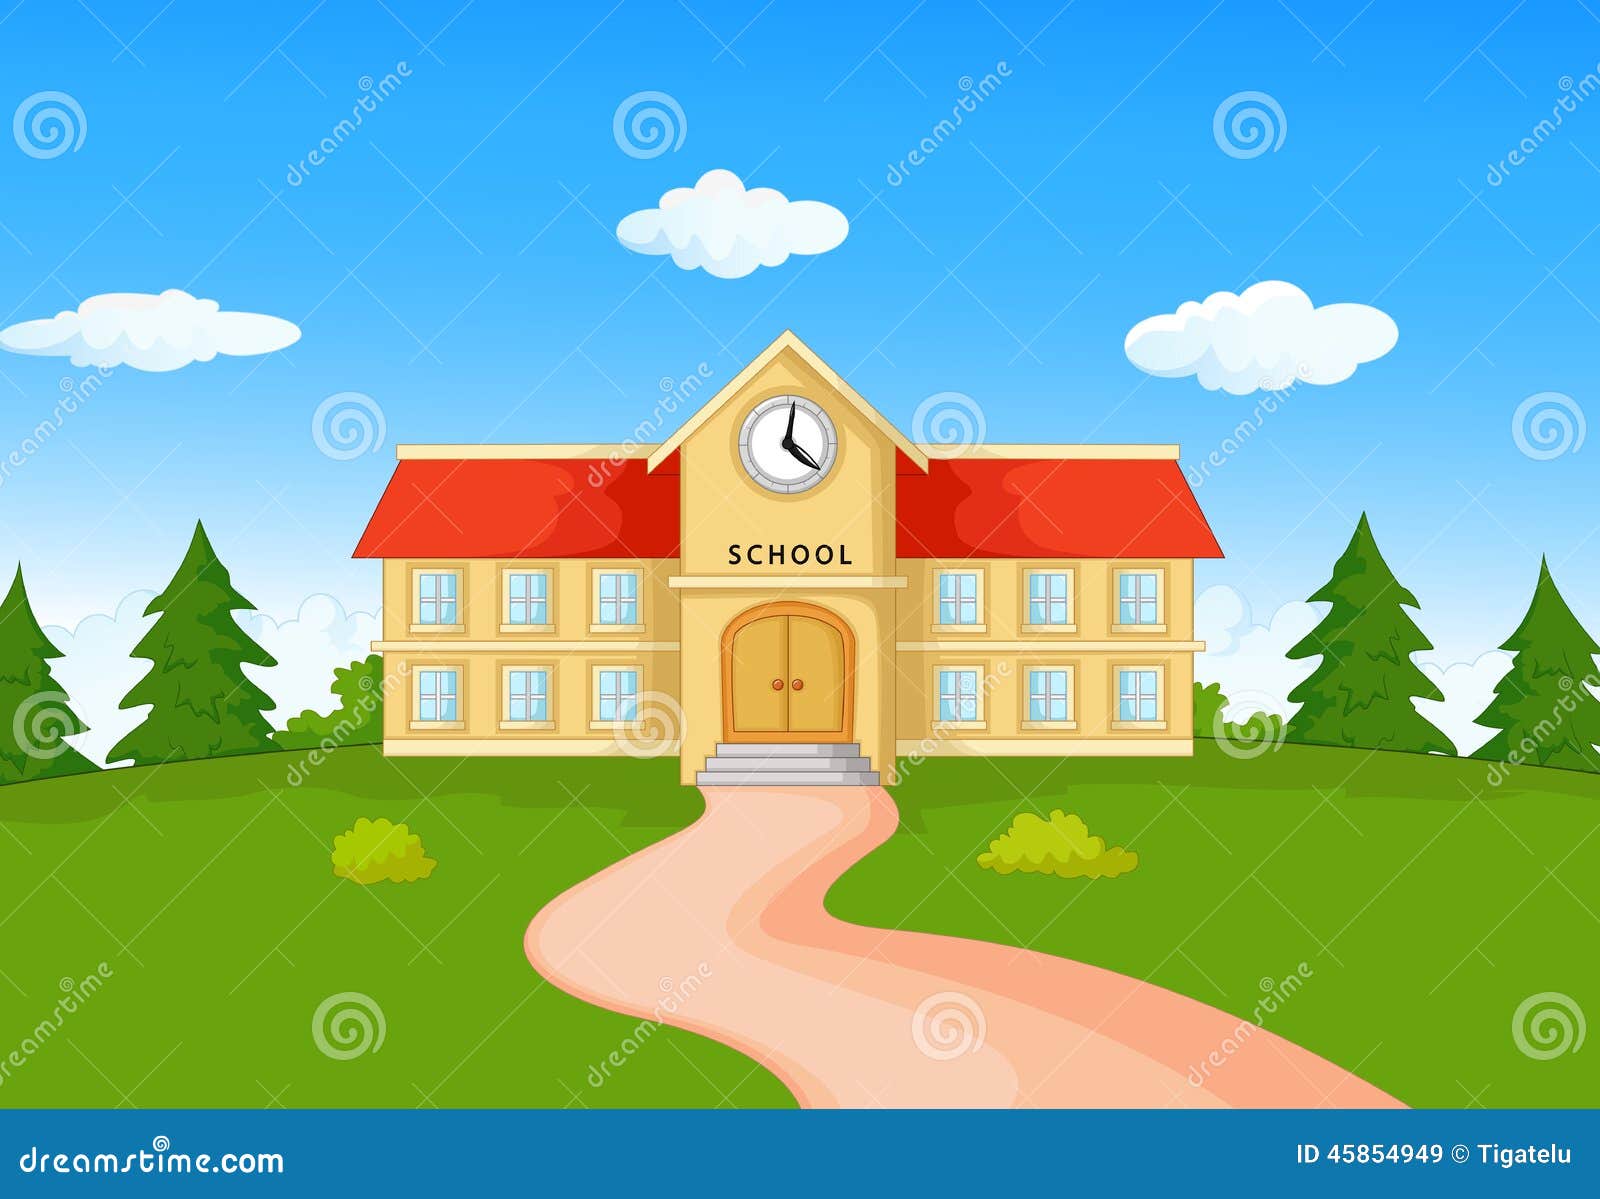 school building cartoon illustration 45854949